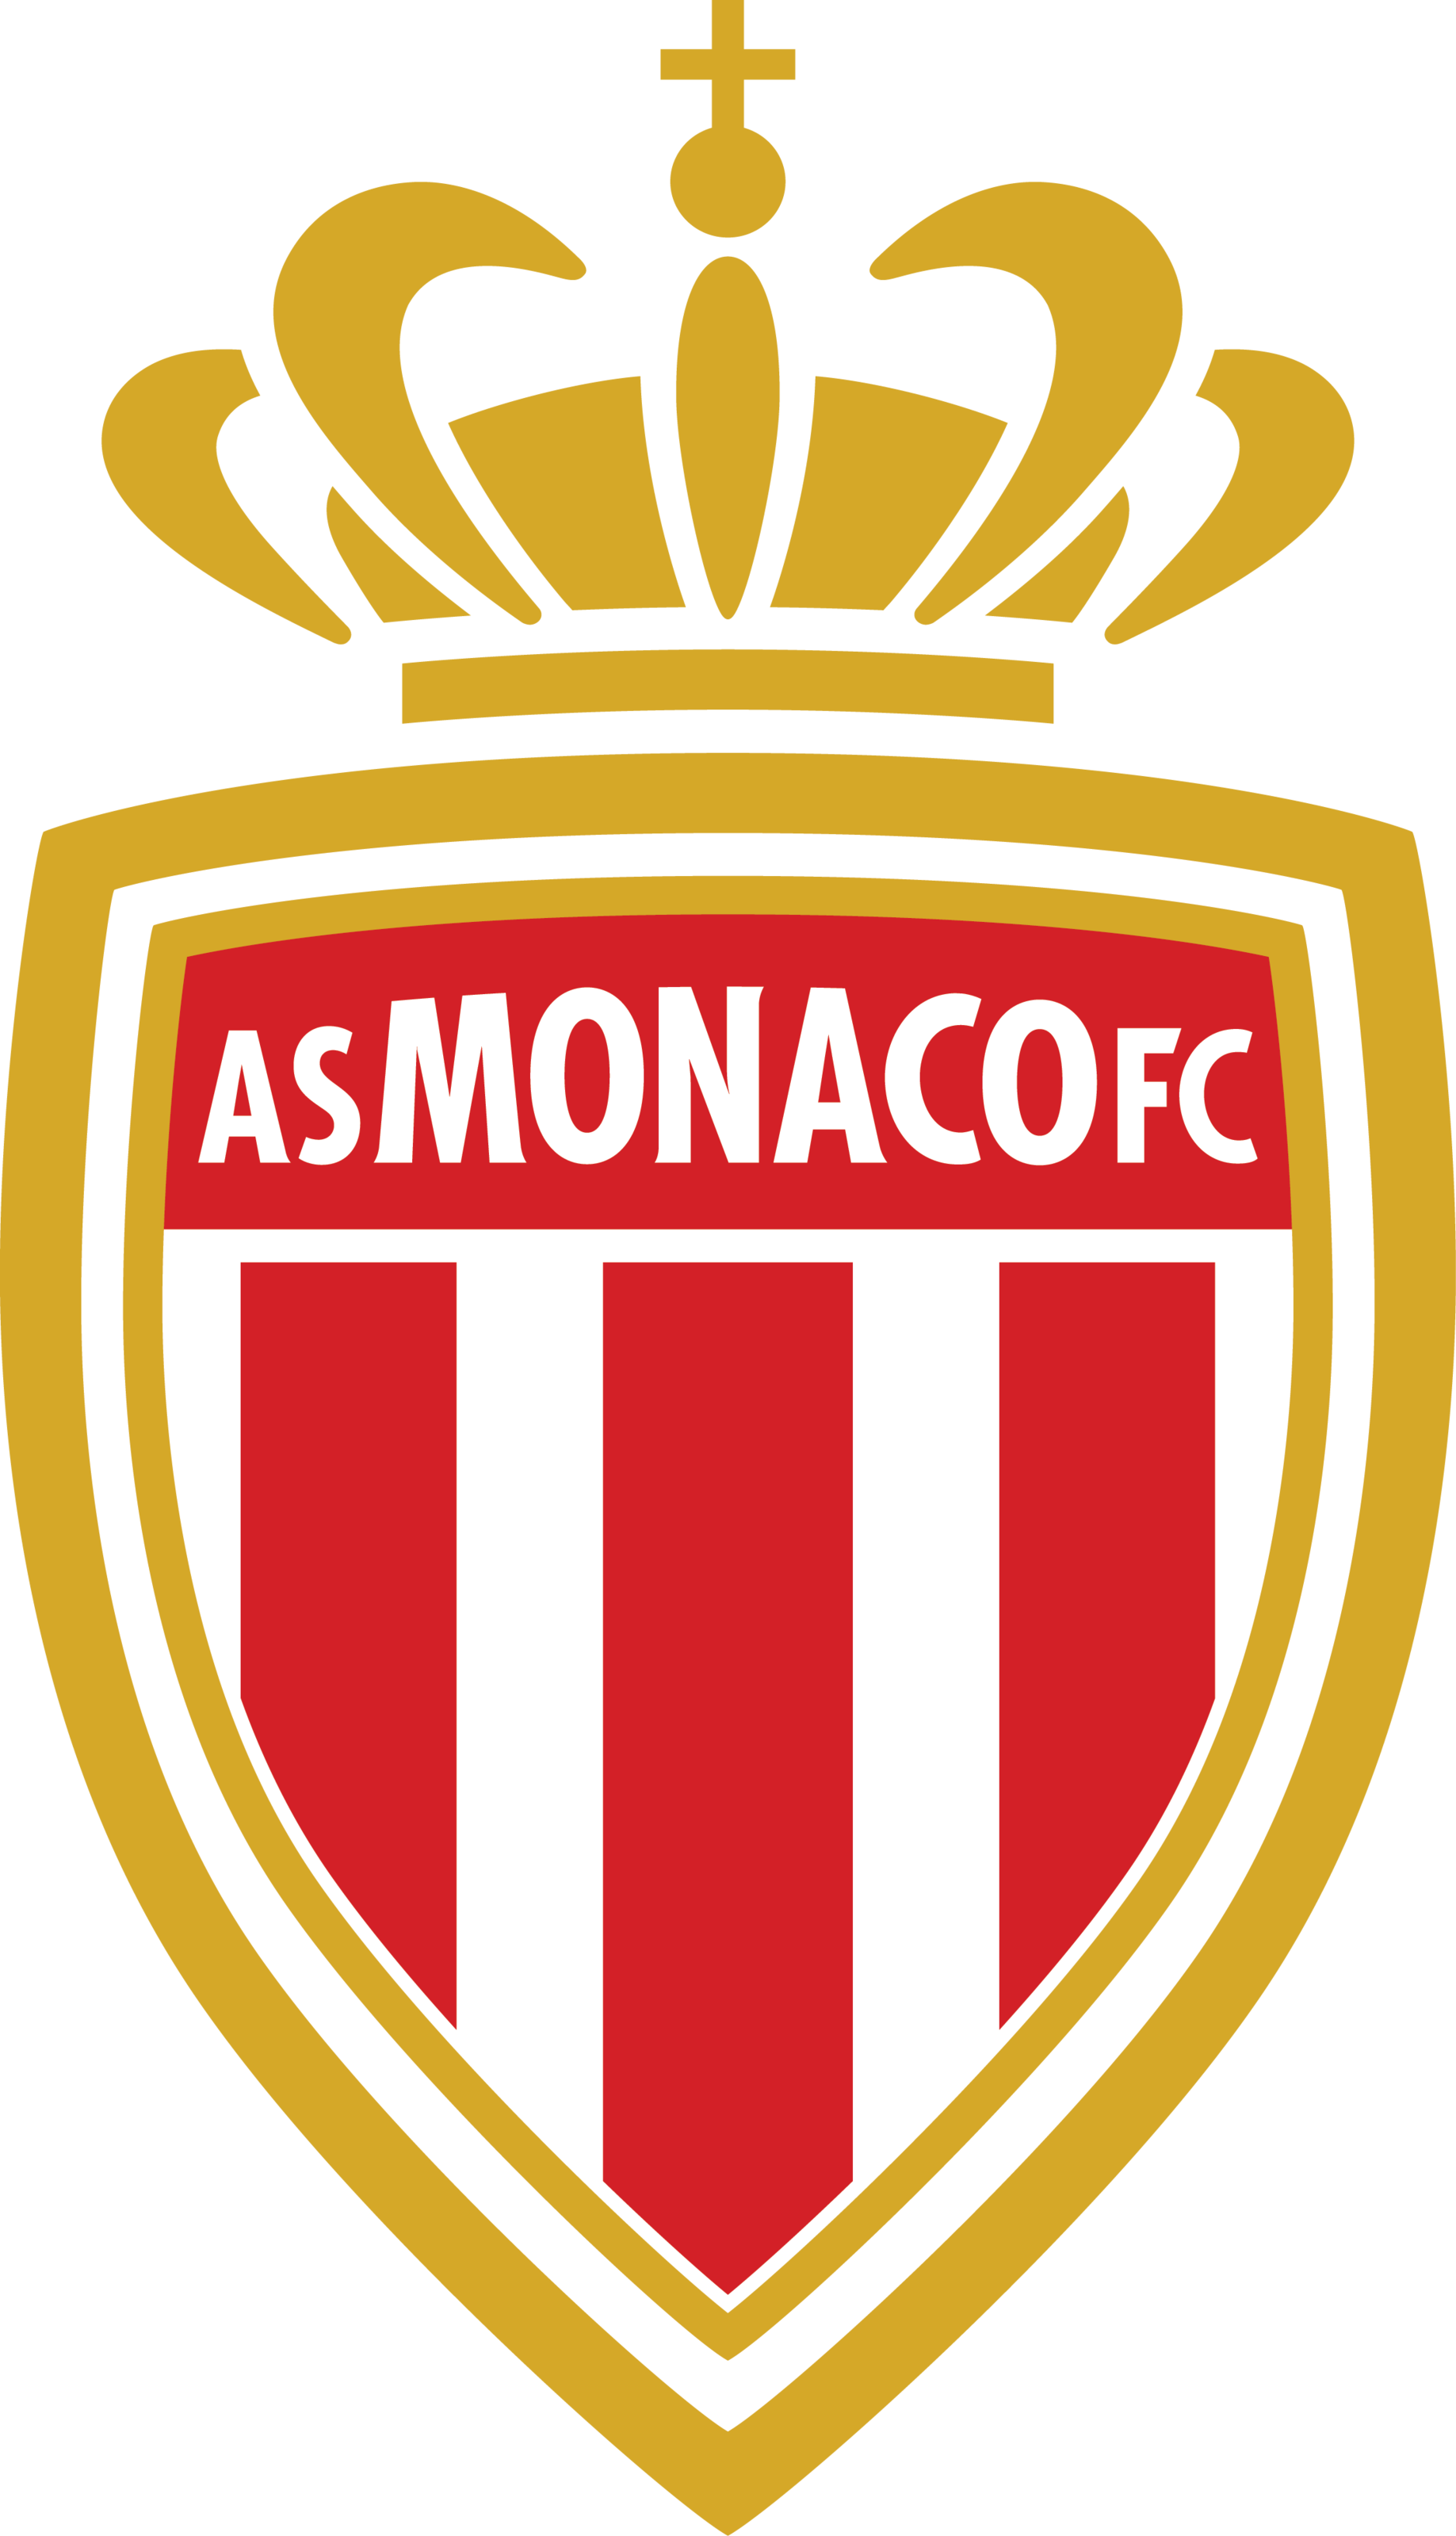 As Monaco logo Imprimer